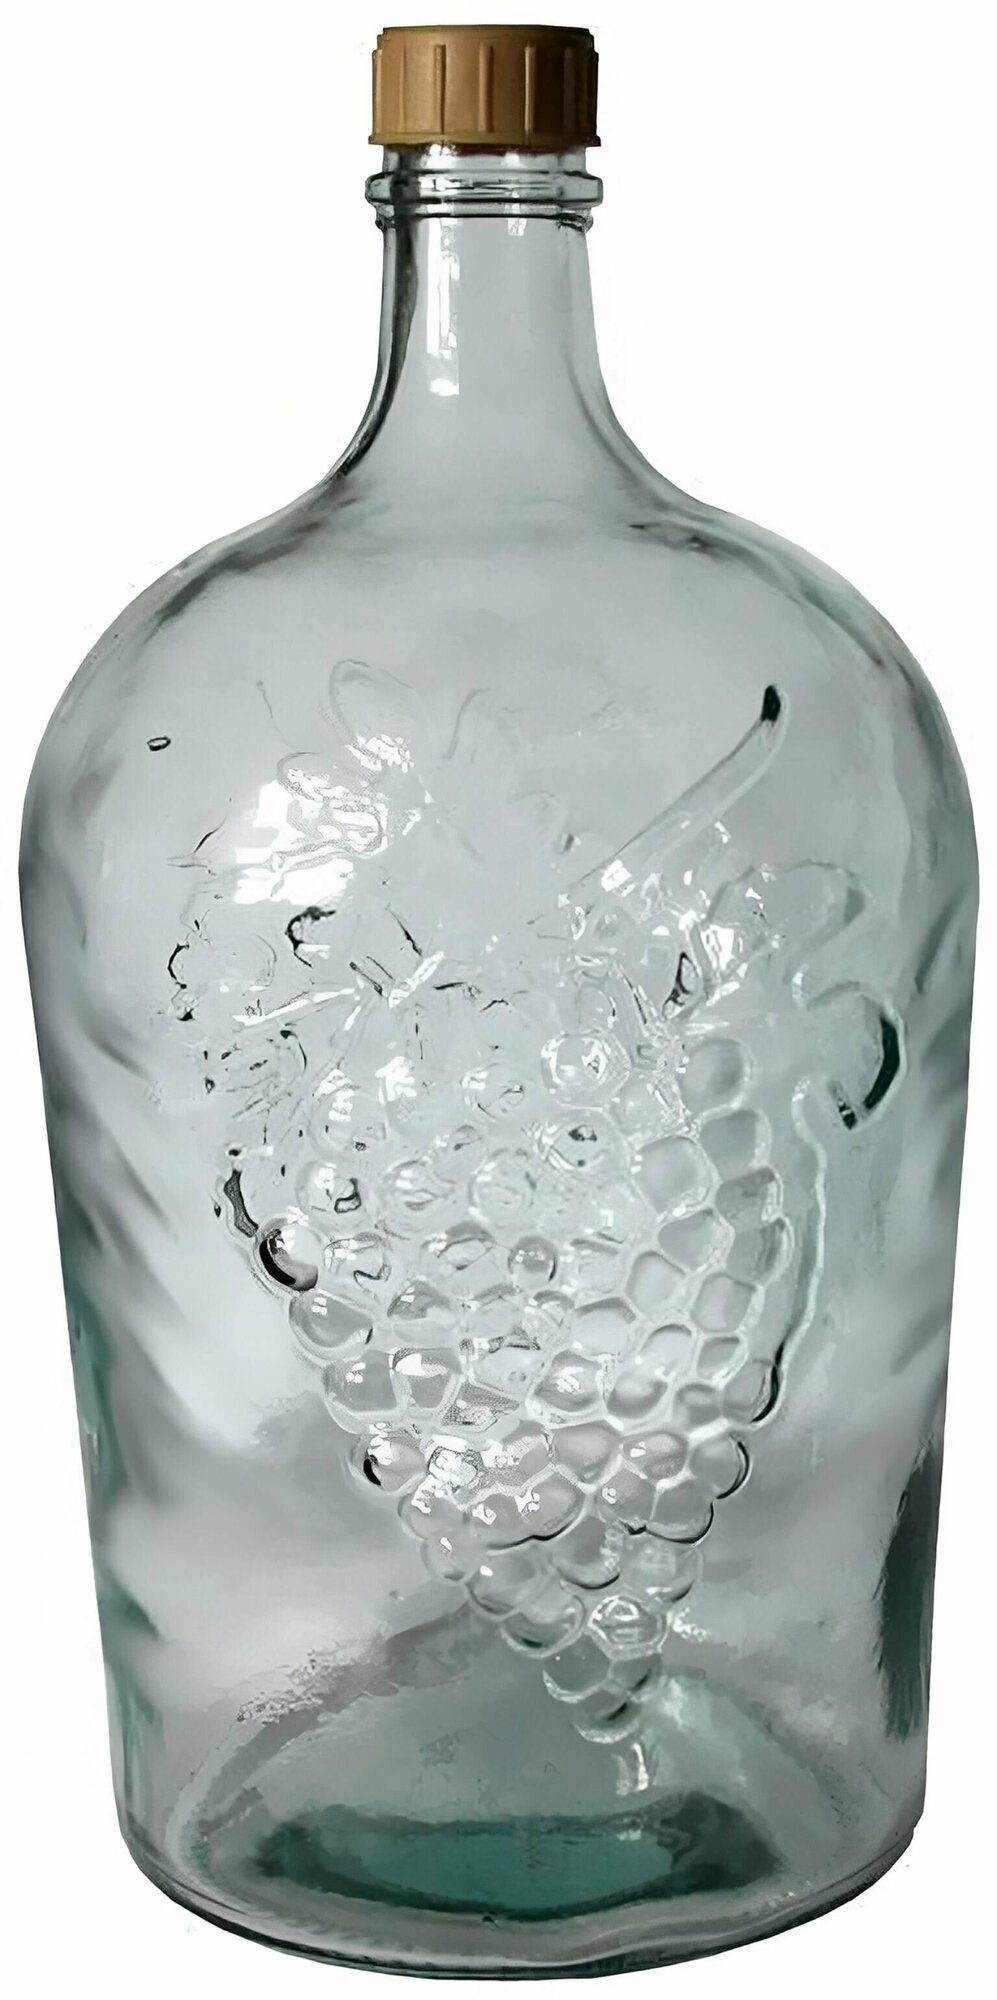 Большая стеклянная бутылка, 5 л, с пластиковой крышкой, рисунок виноградная лоза. Является идеальным подарком для винодела